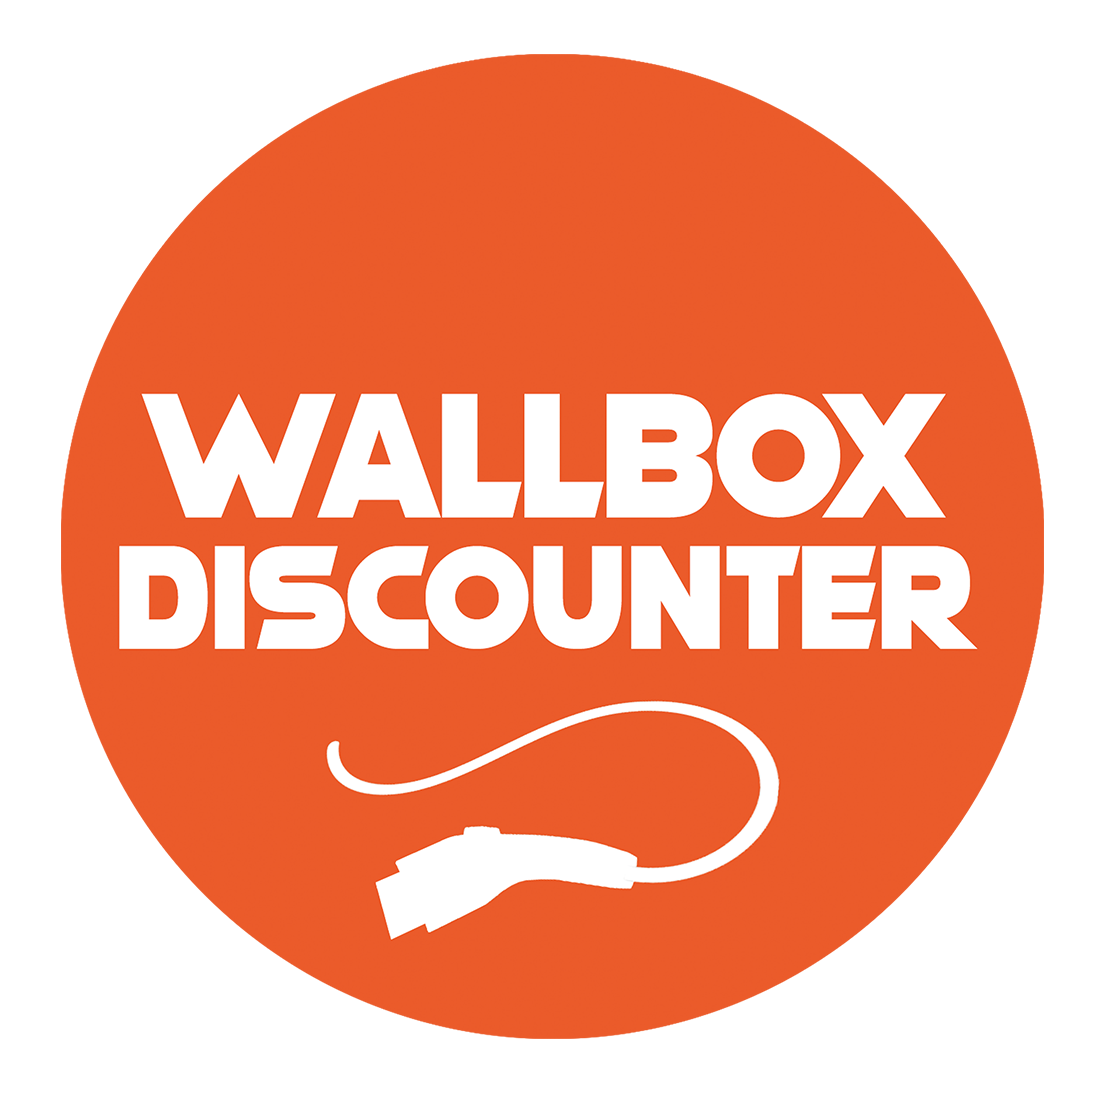 Wallbox Discounter